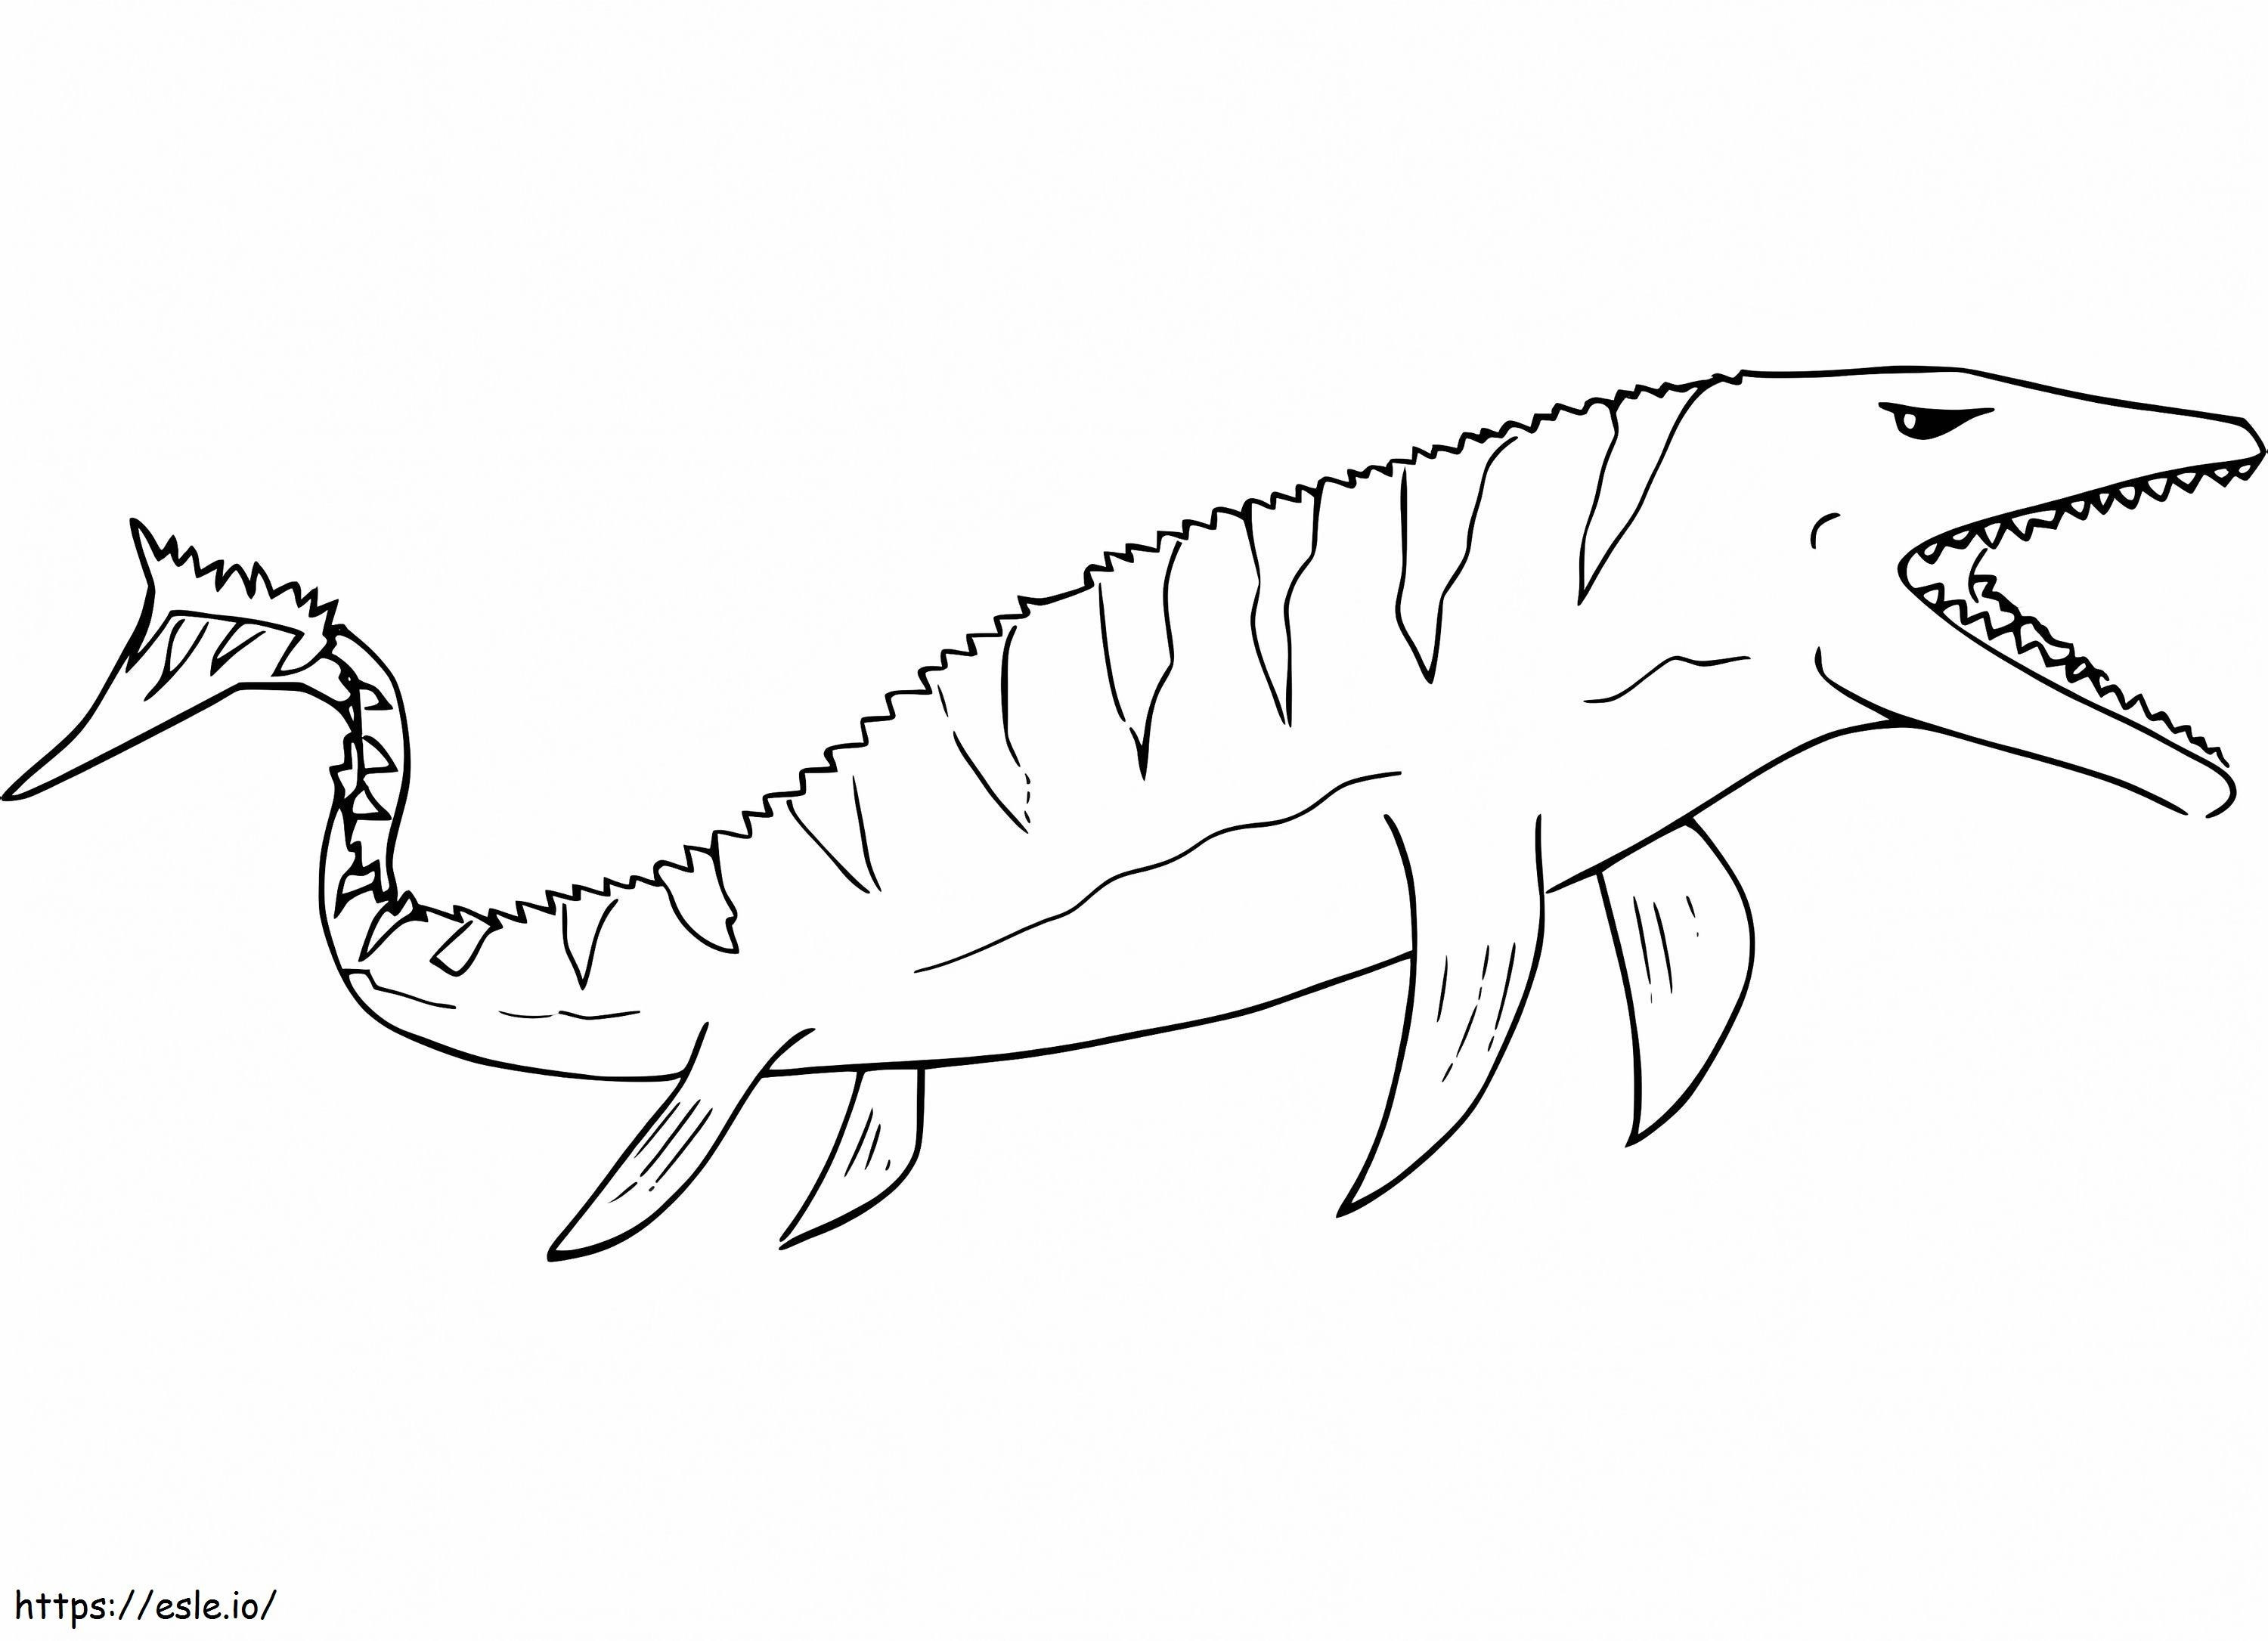 Angry Mosasaurus coloring page